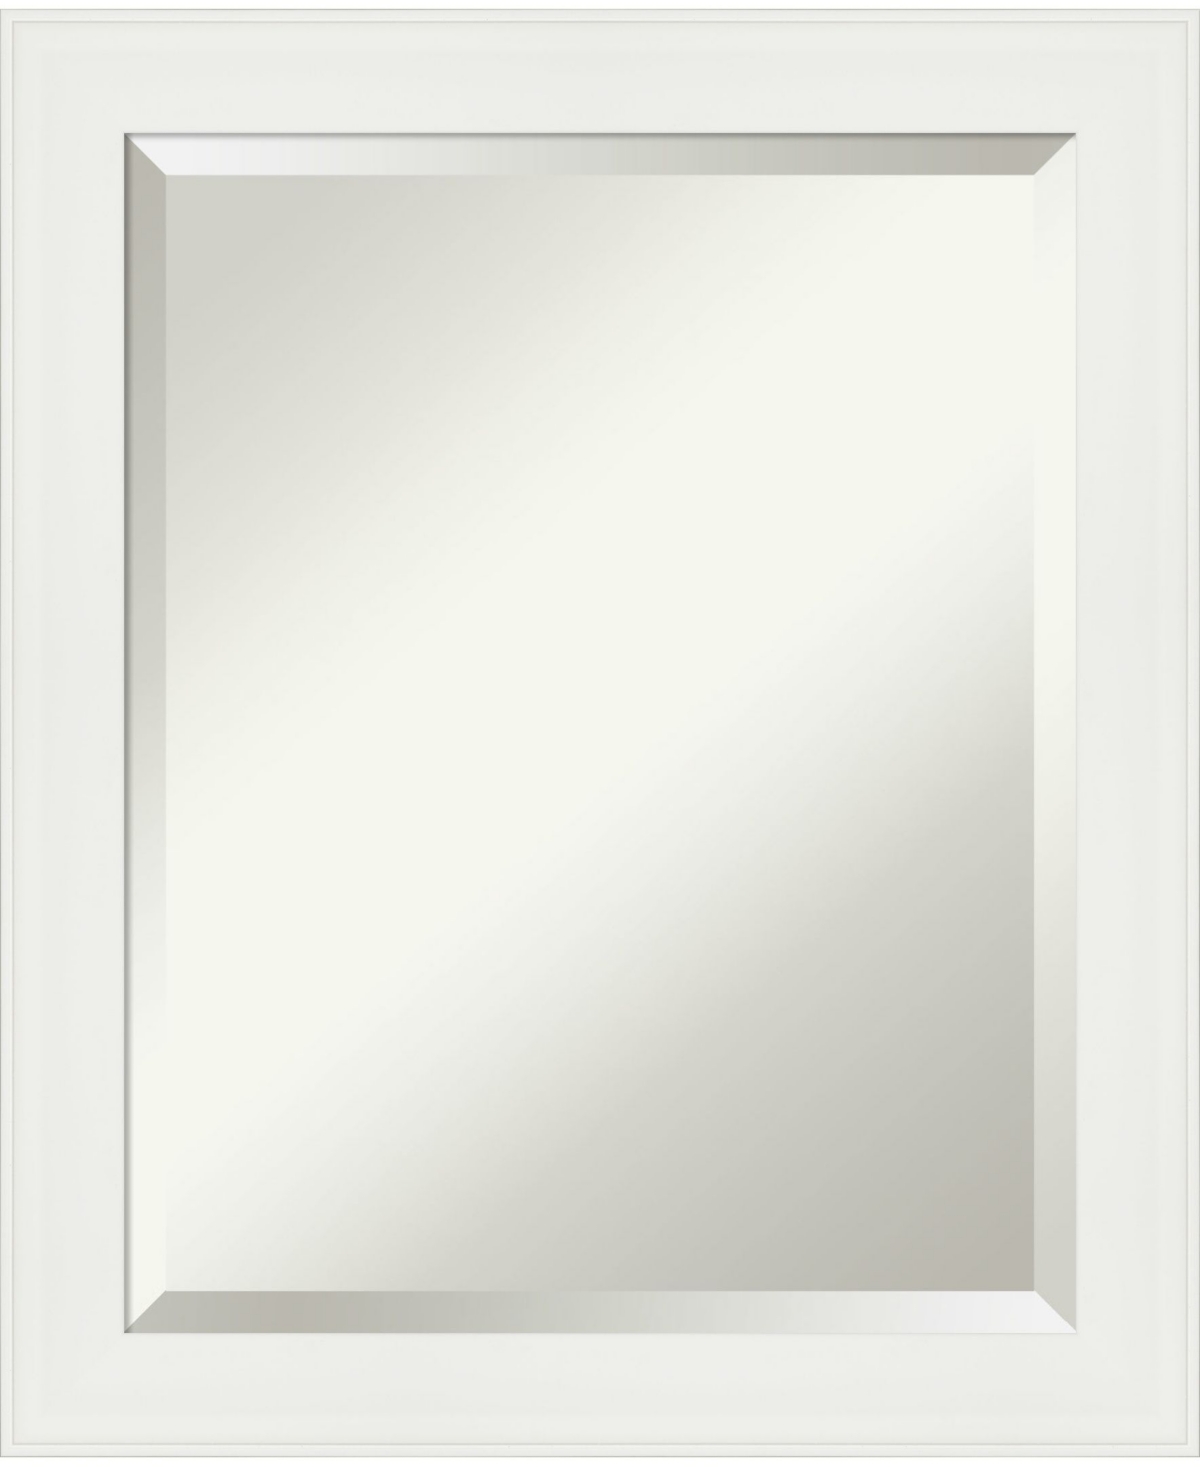 Vanity Framed Bathroom Vanity Wall Mirror, 19.38" x 23.38" - White